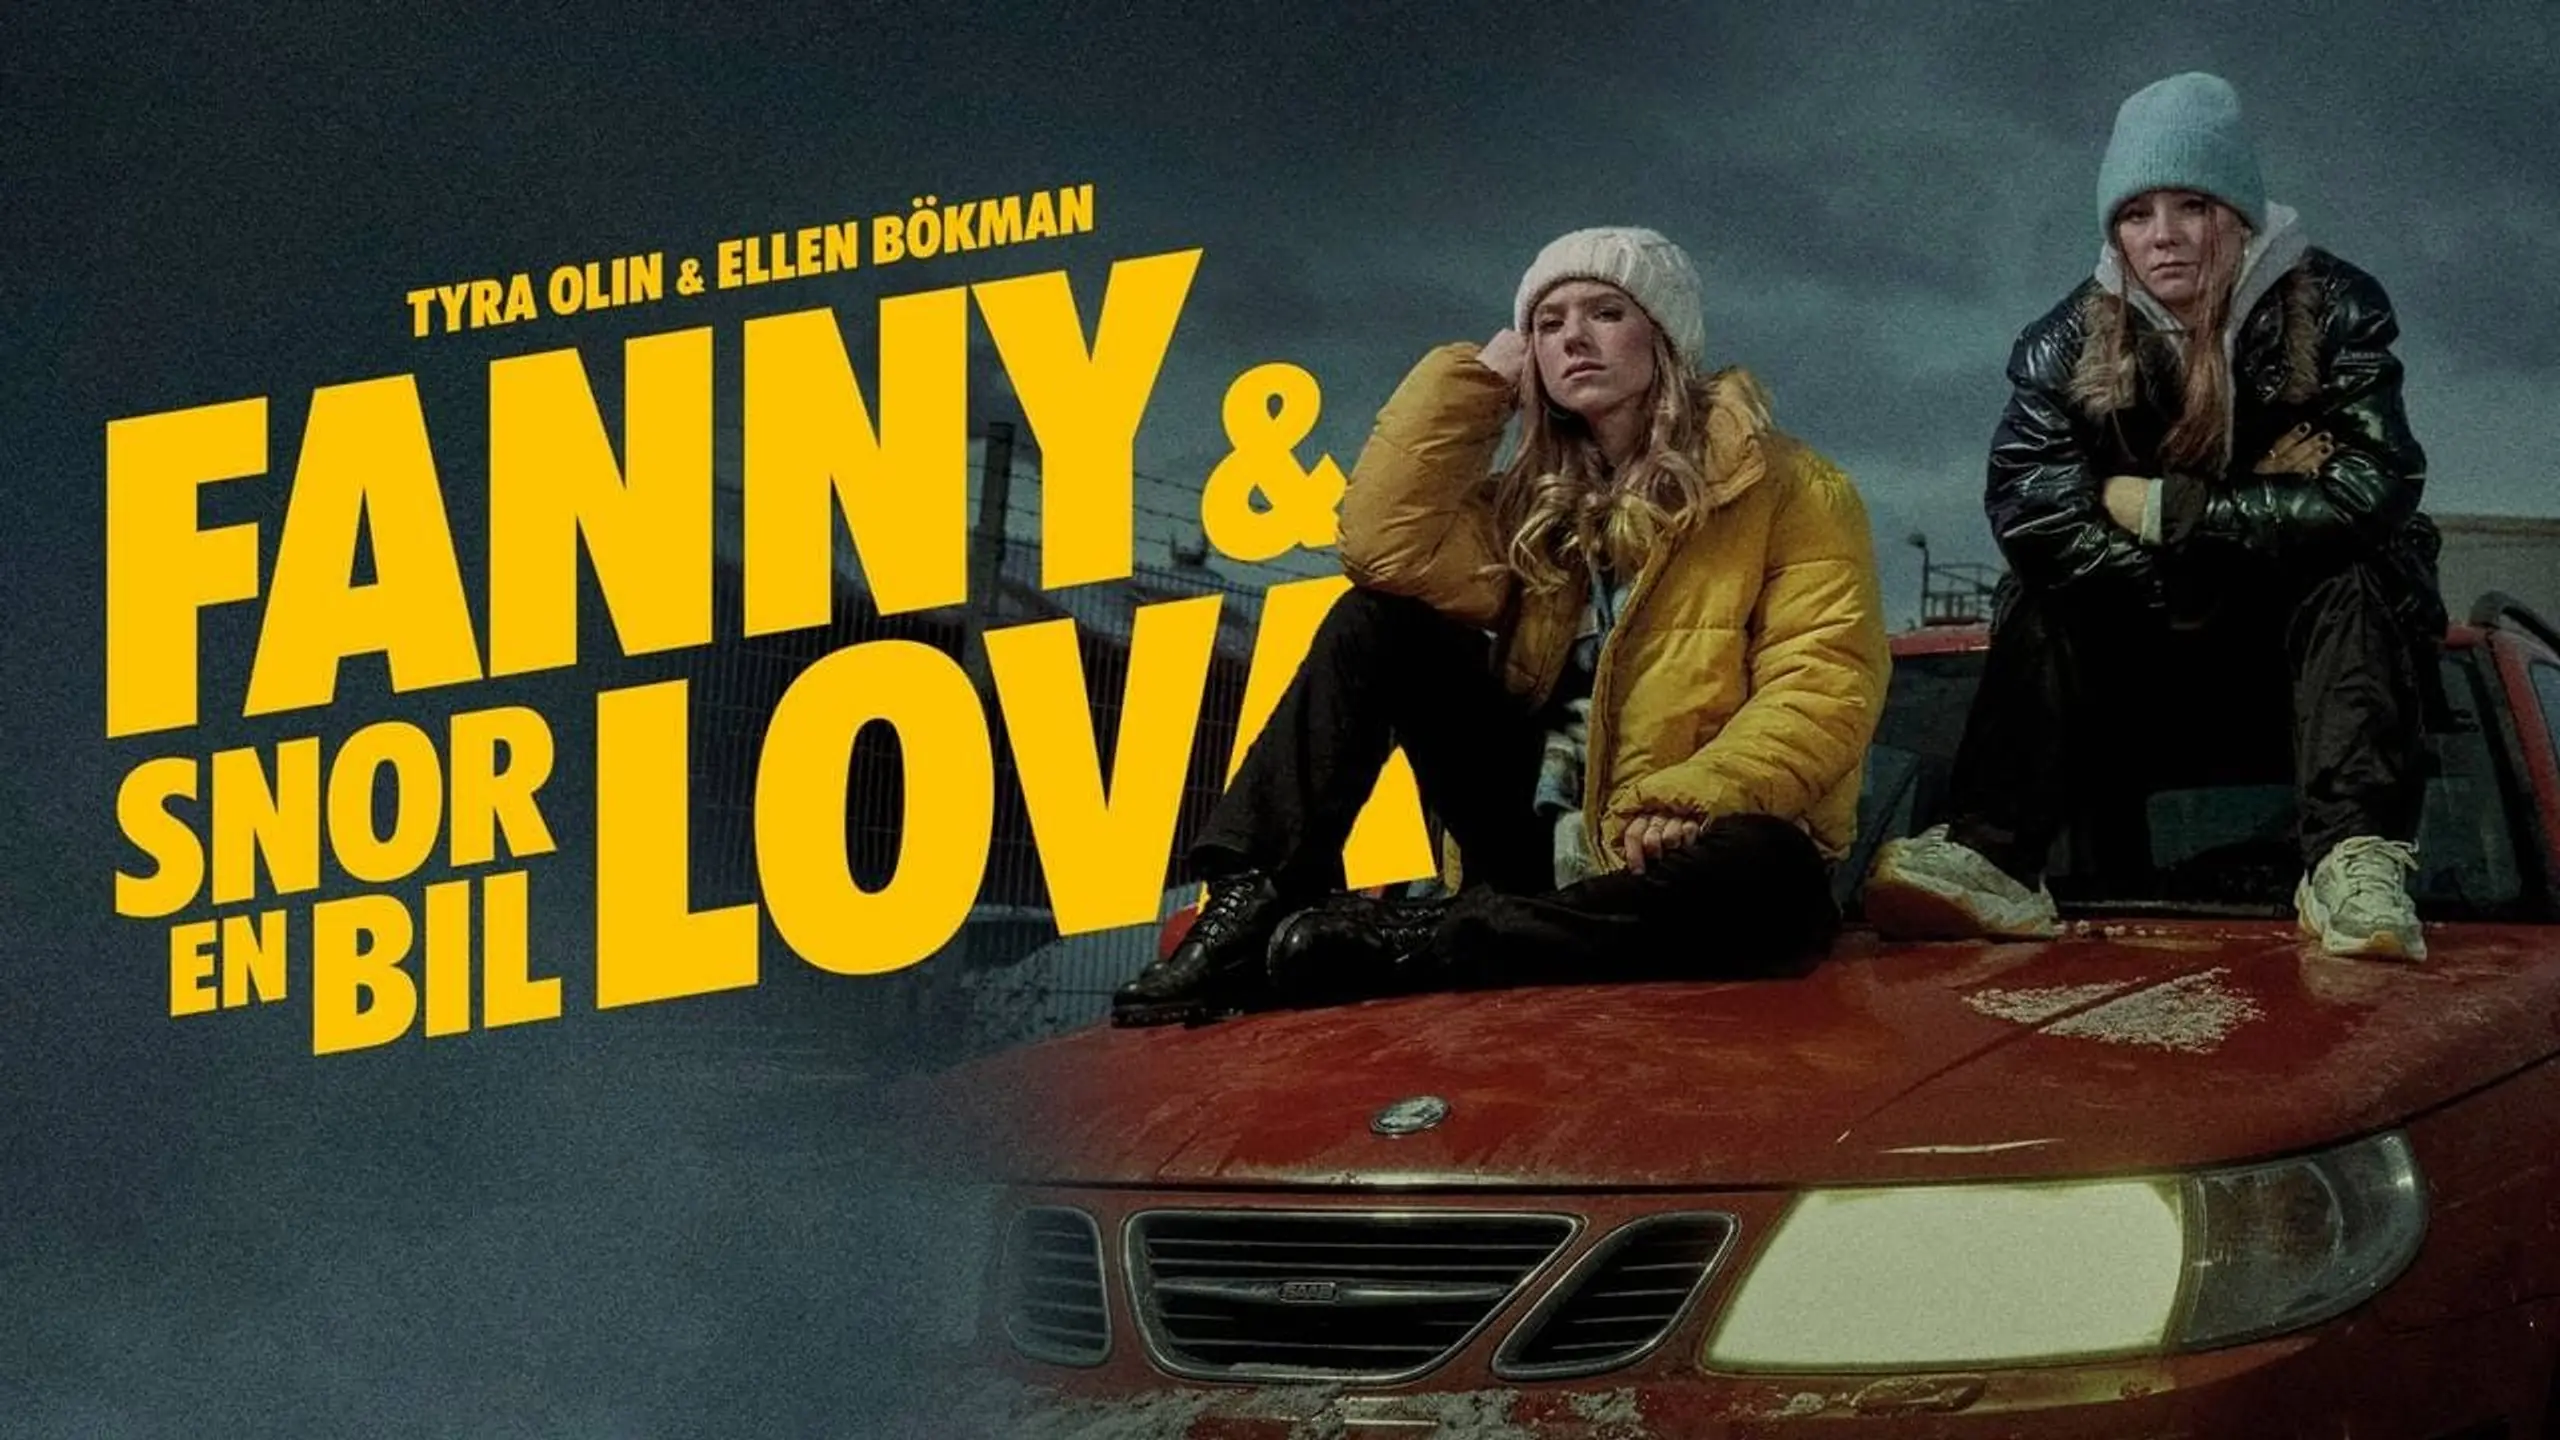 Fanny & Lova snor en bil